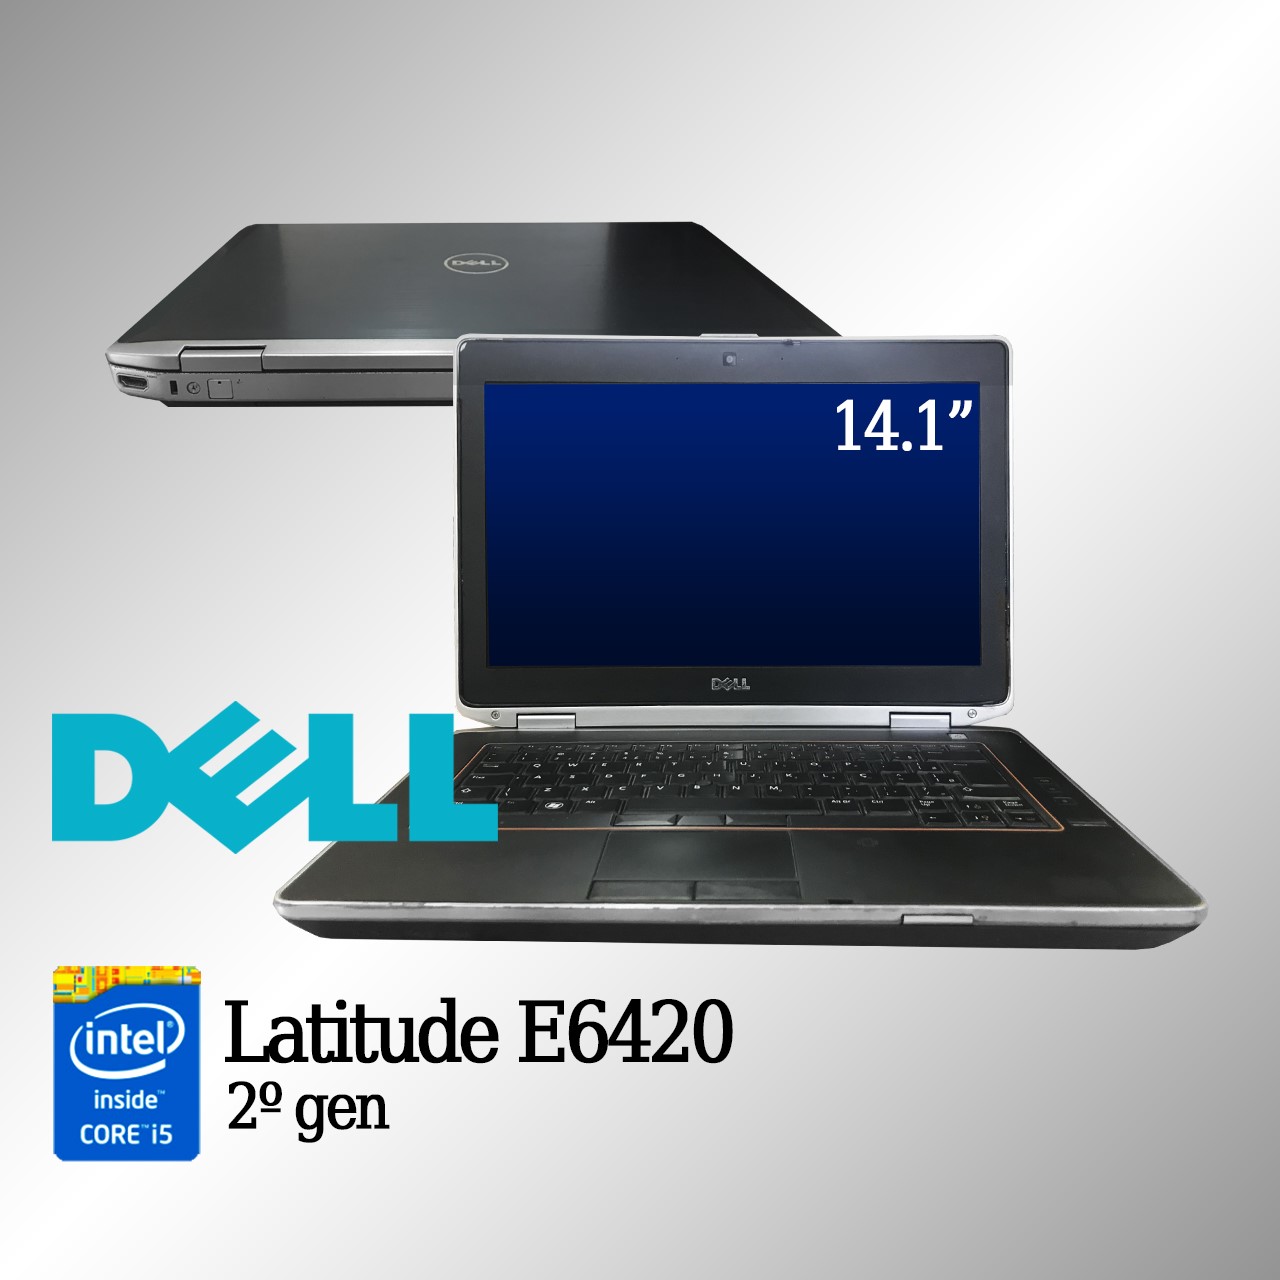 Laptop Dell Latitude E6420 Intel i5 de 2a. Geração 4GB de memória RAM e 120GB Disco